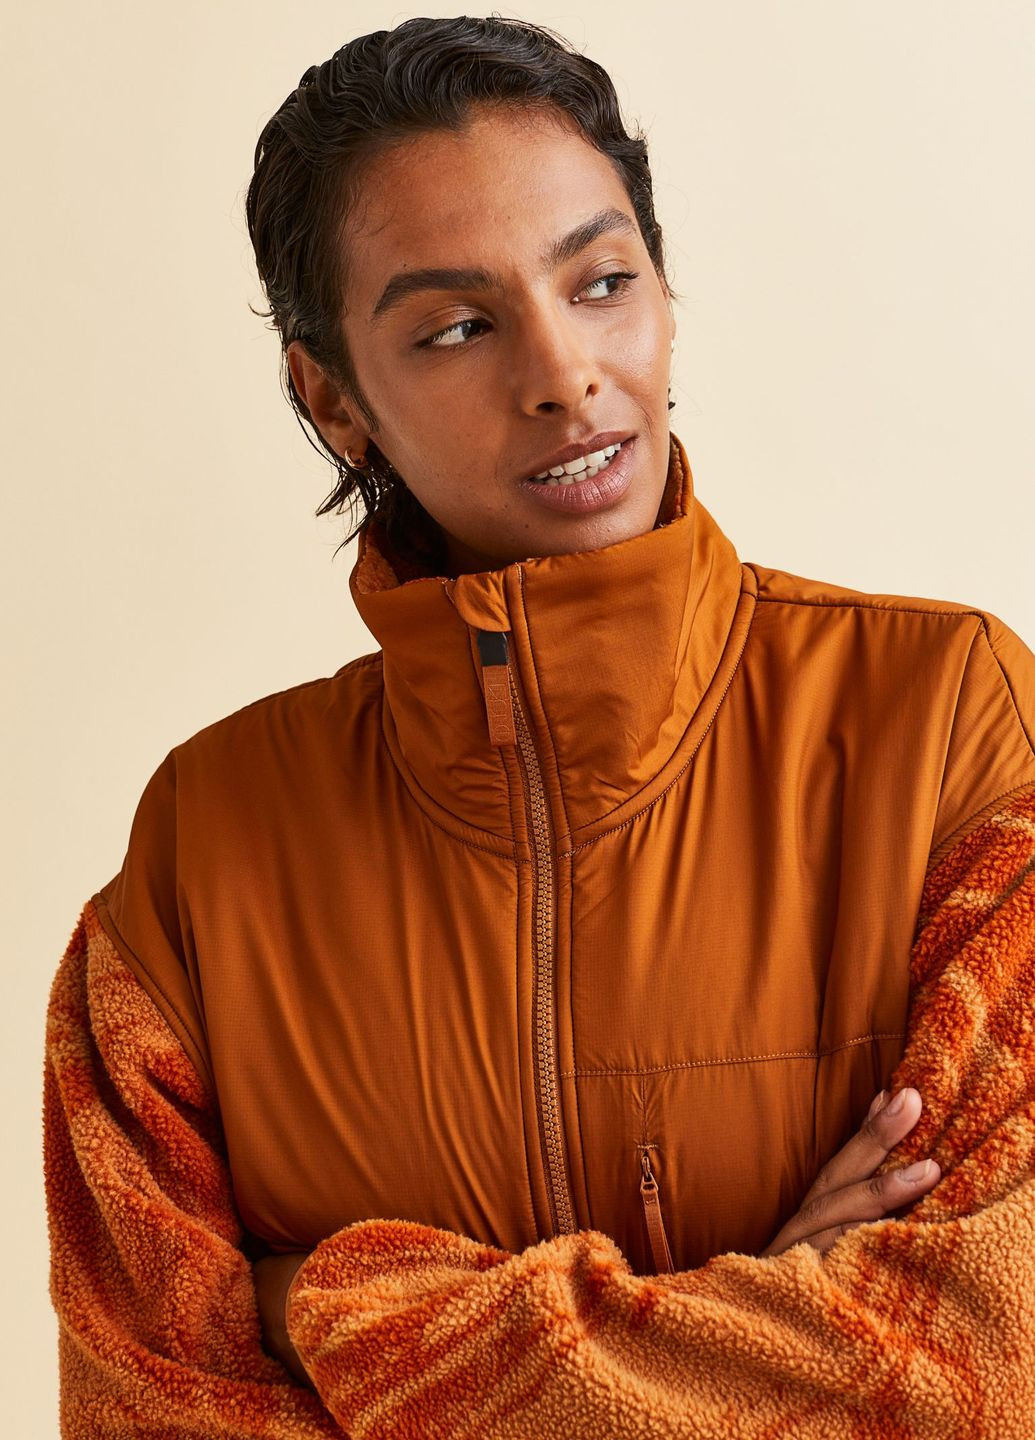 Оранжевая демисезонная спортивная куртка из тедди-флиса H&M